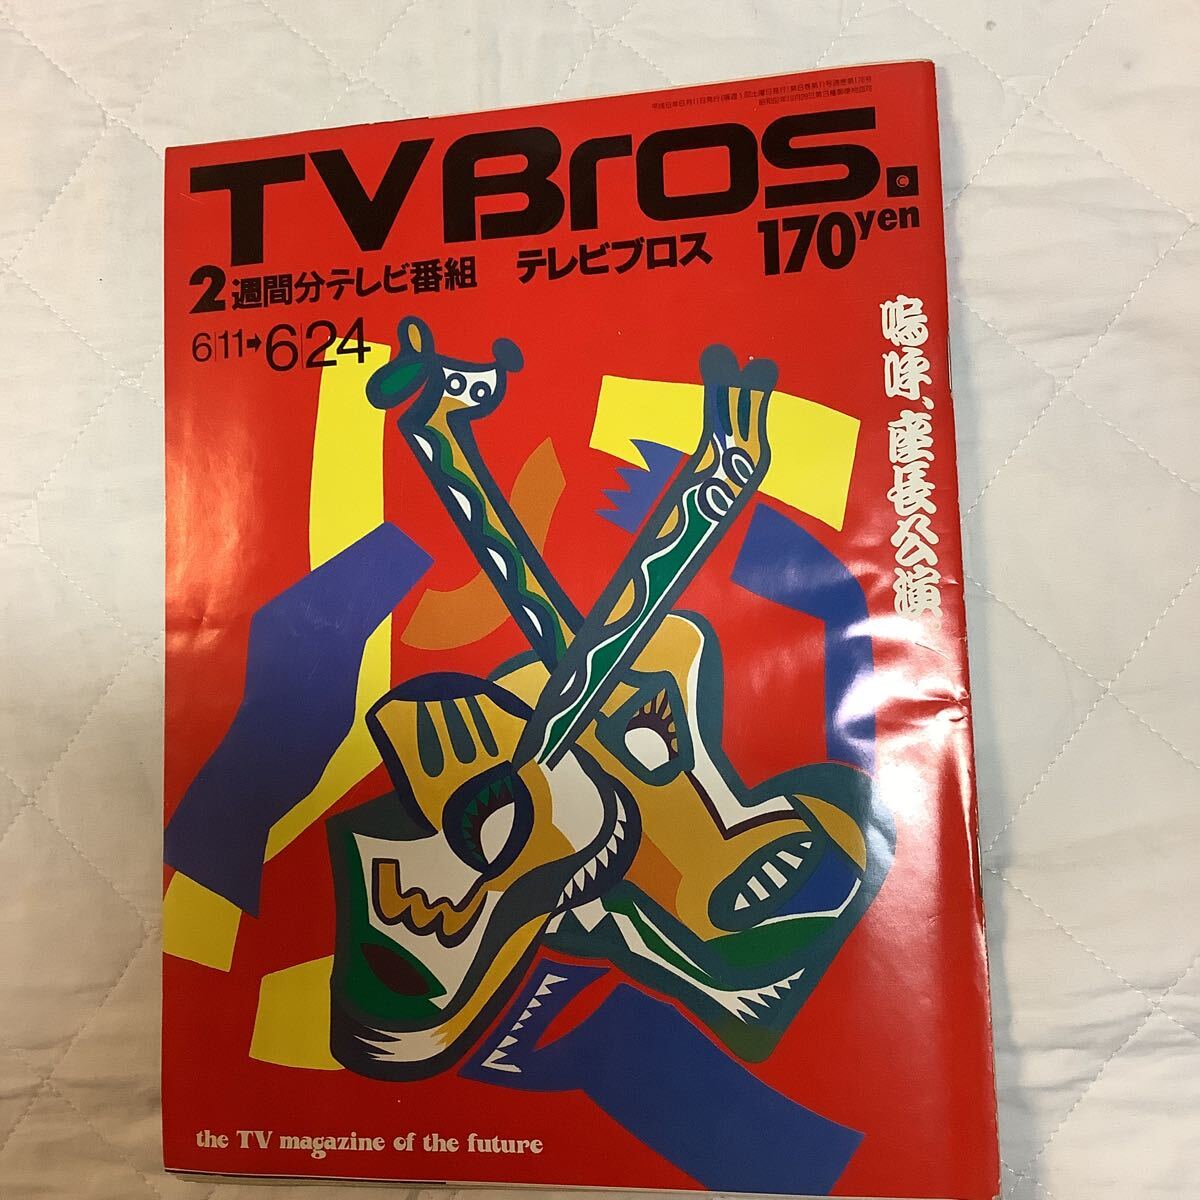 【 TV Bros テレビブロス】1994年11号 6/11-6/24 ビースティー・ボーイズ・インタビューの画像1